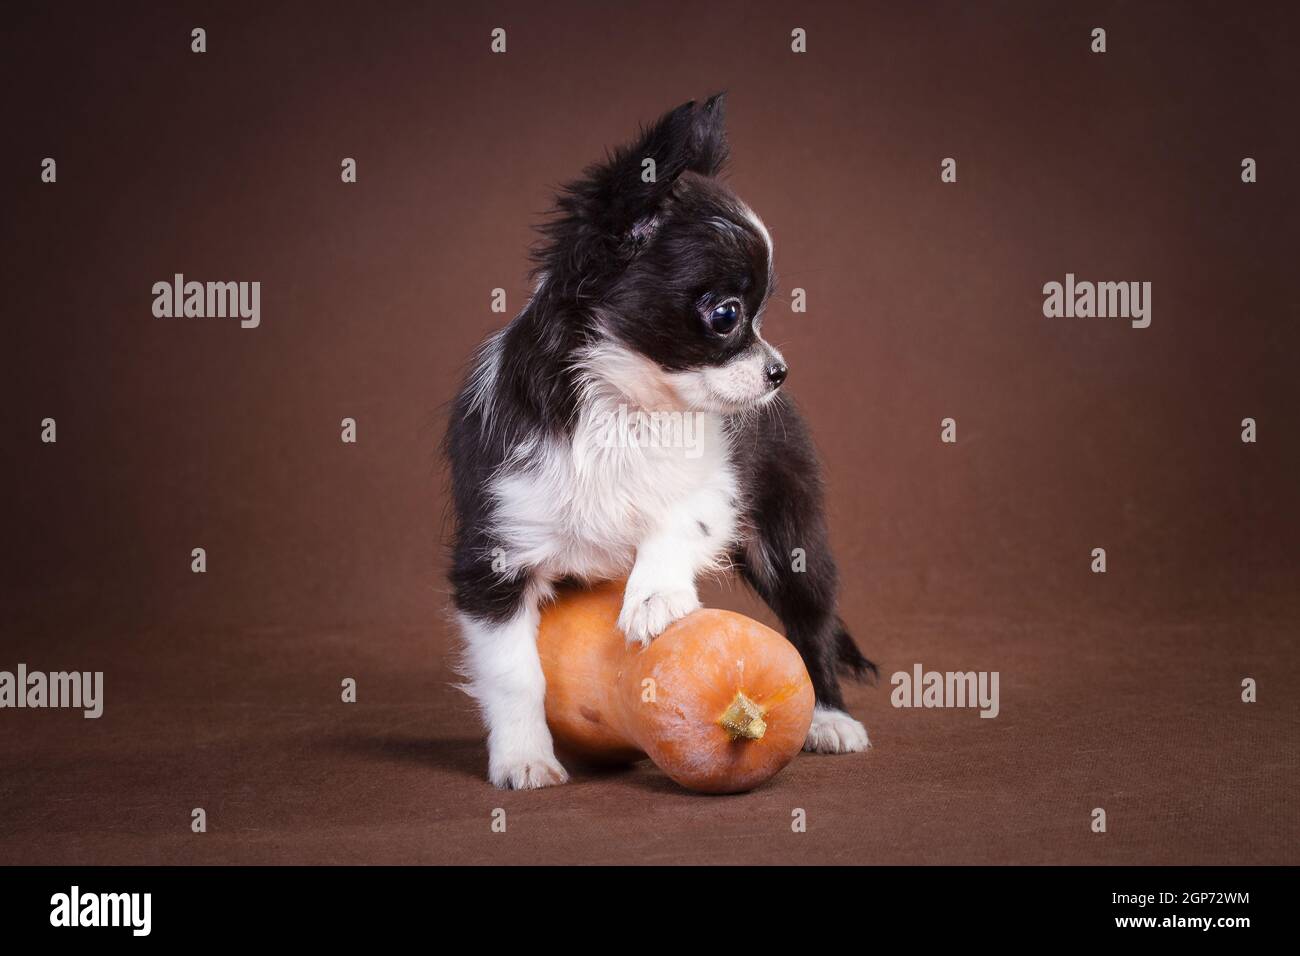 Soffice cucciolo bianco e nero di Chihuahua su sfondo marrone, poggiato su una zucca gialla e arancione. Foto Stock